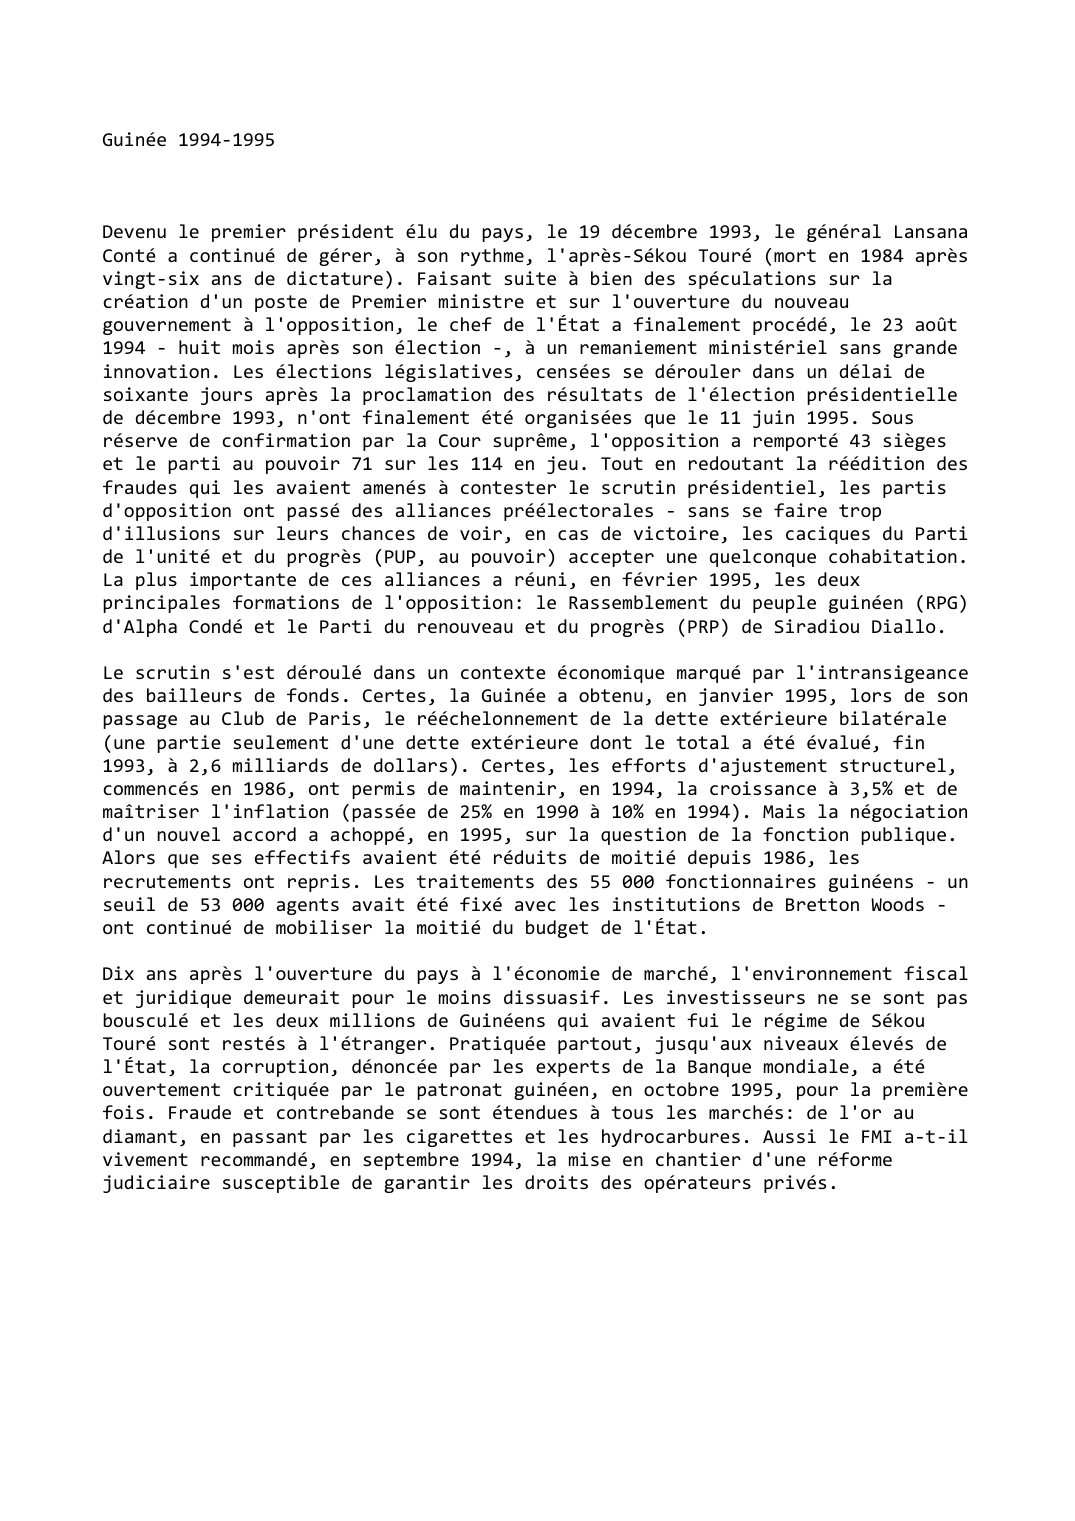 Prévisualisation du document Guinée 1994-1995